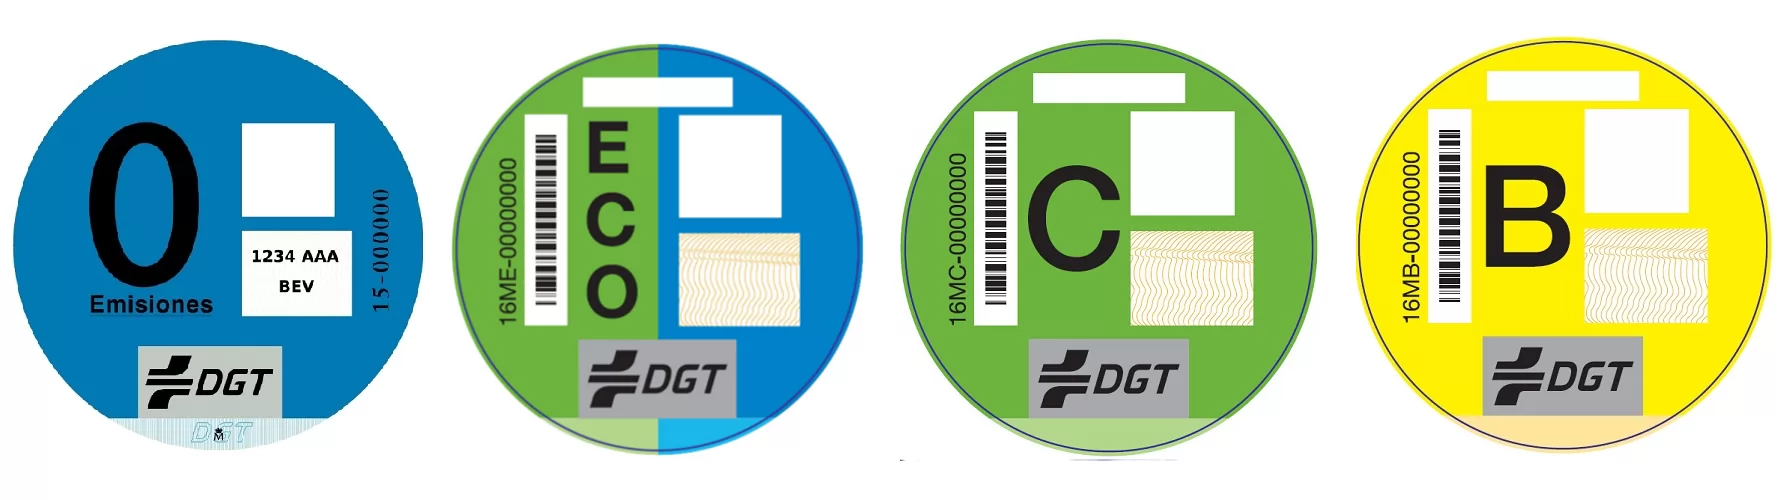 Las principales diferencias en las pegatinas de la DGT